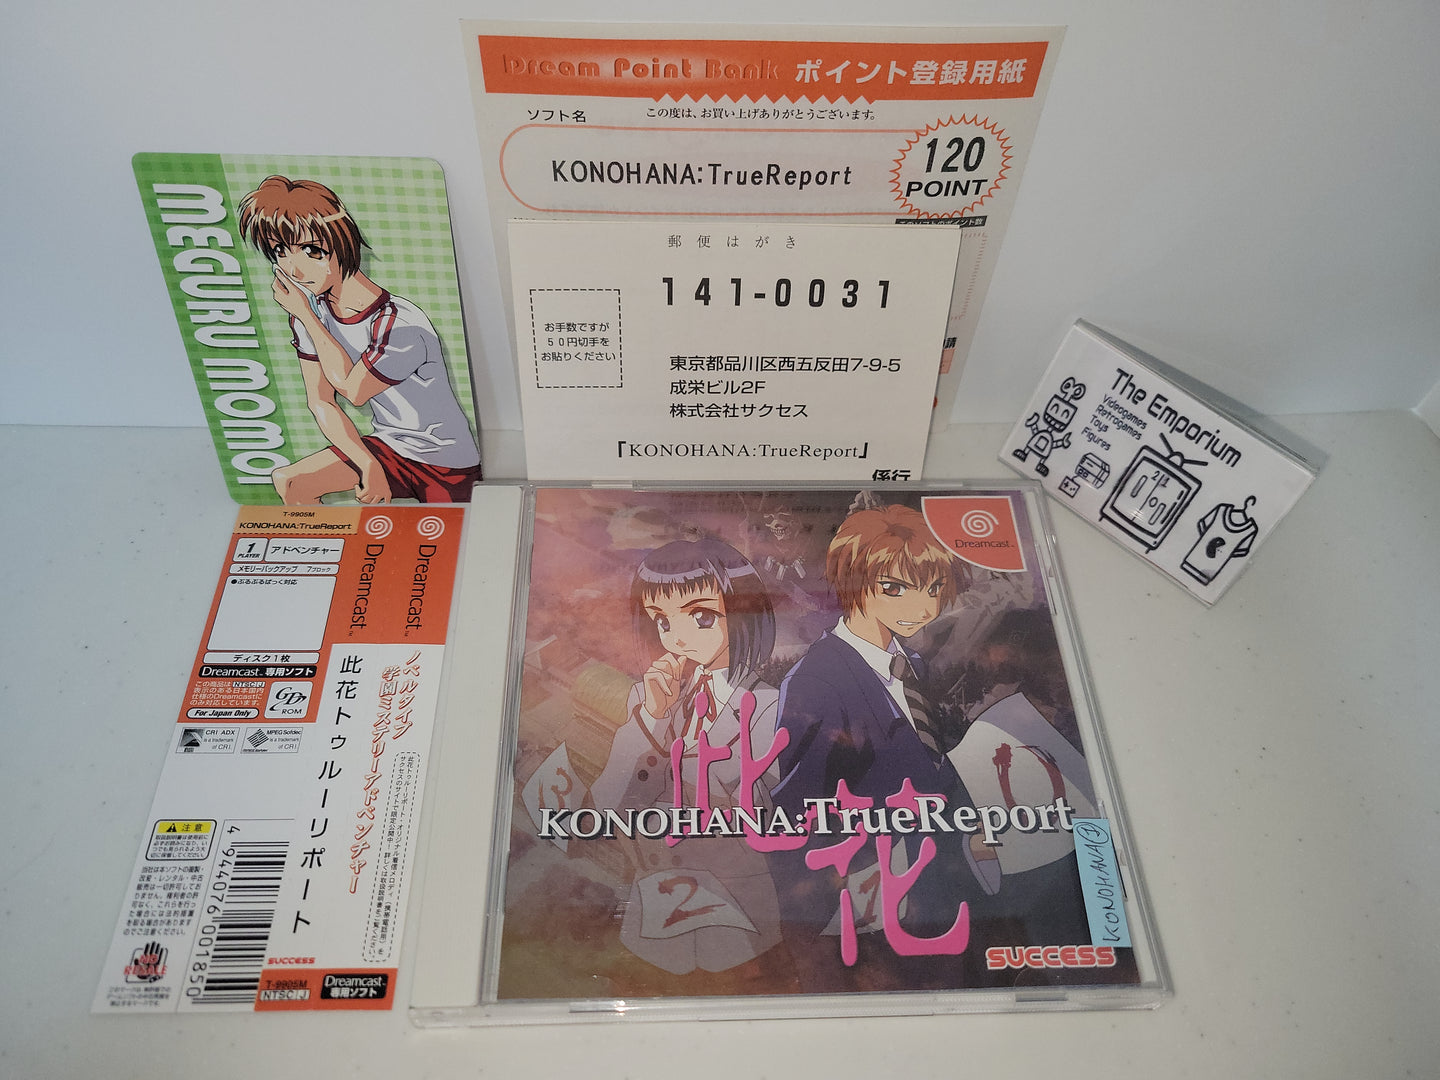 Konohana: True Report - Sega dc Dreamcast